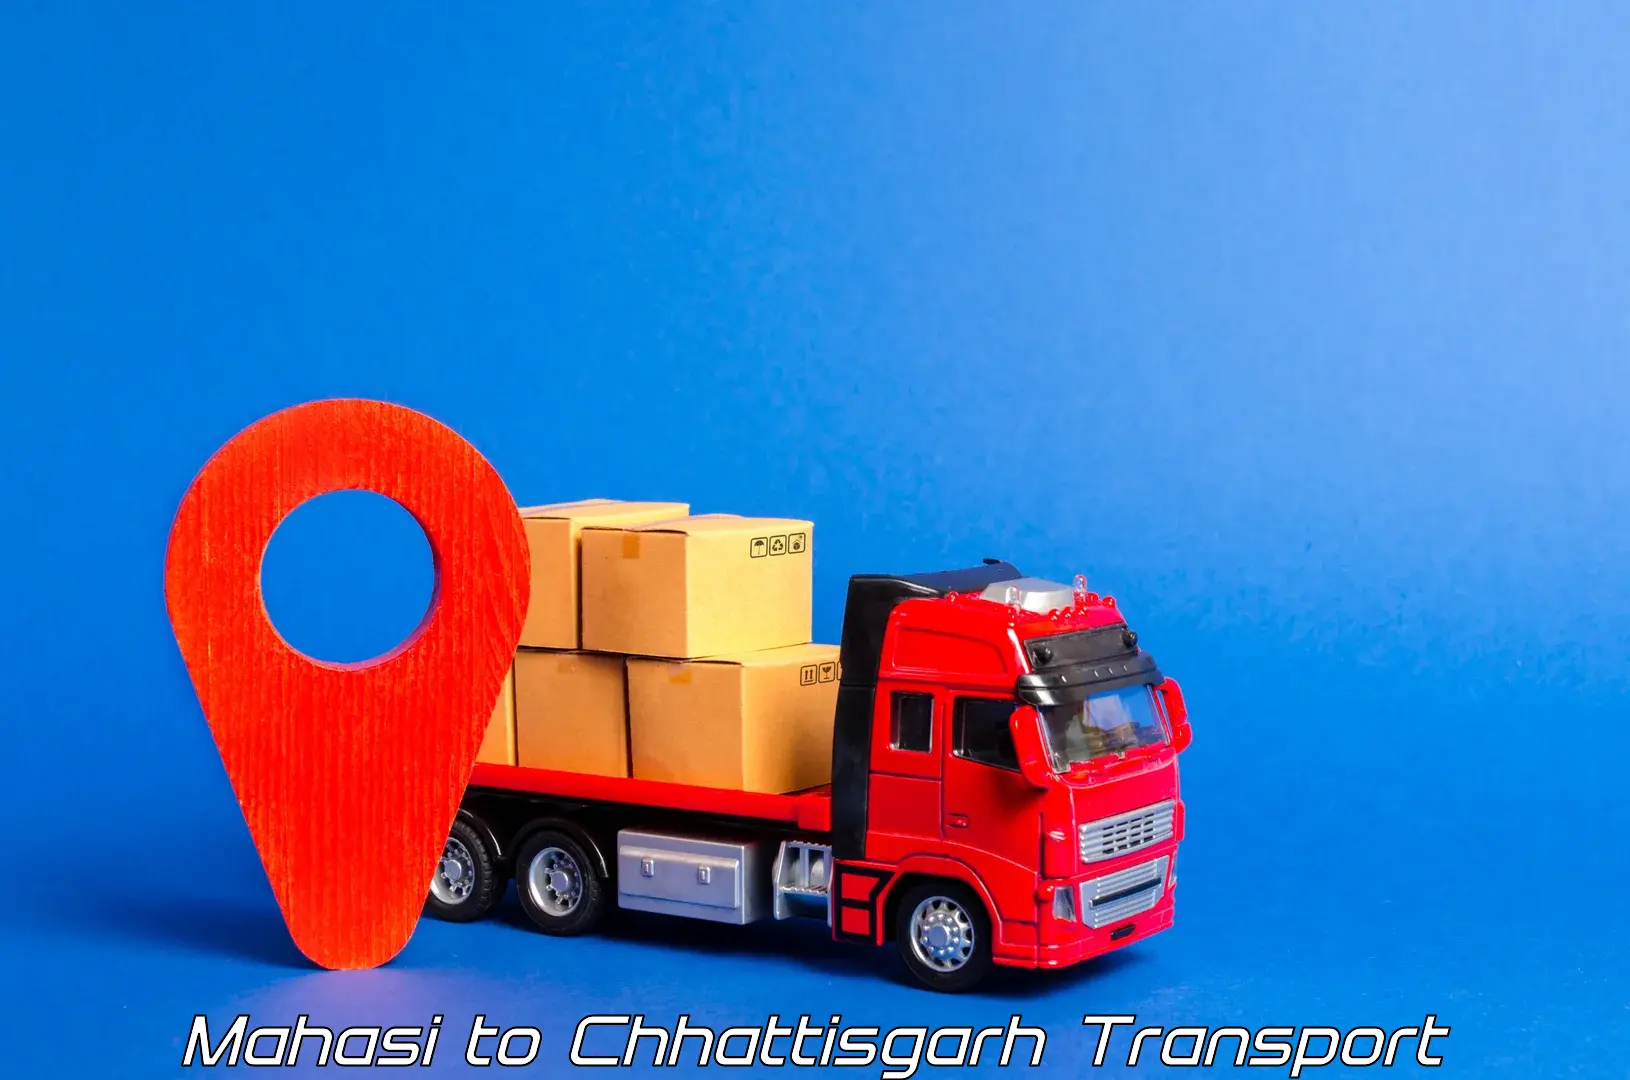 Transportation services Mahasi to Pathalgaon